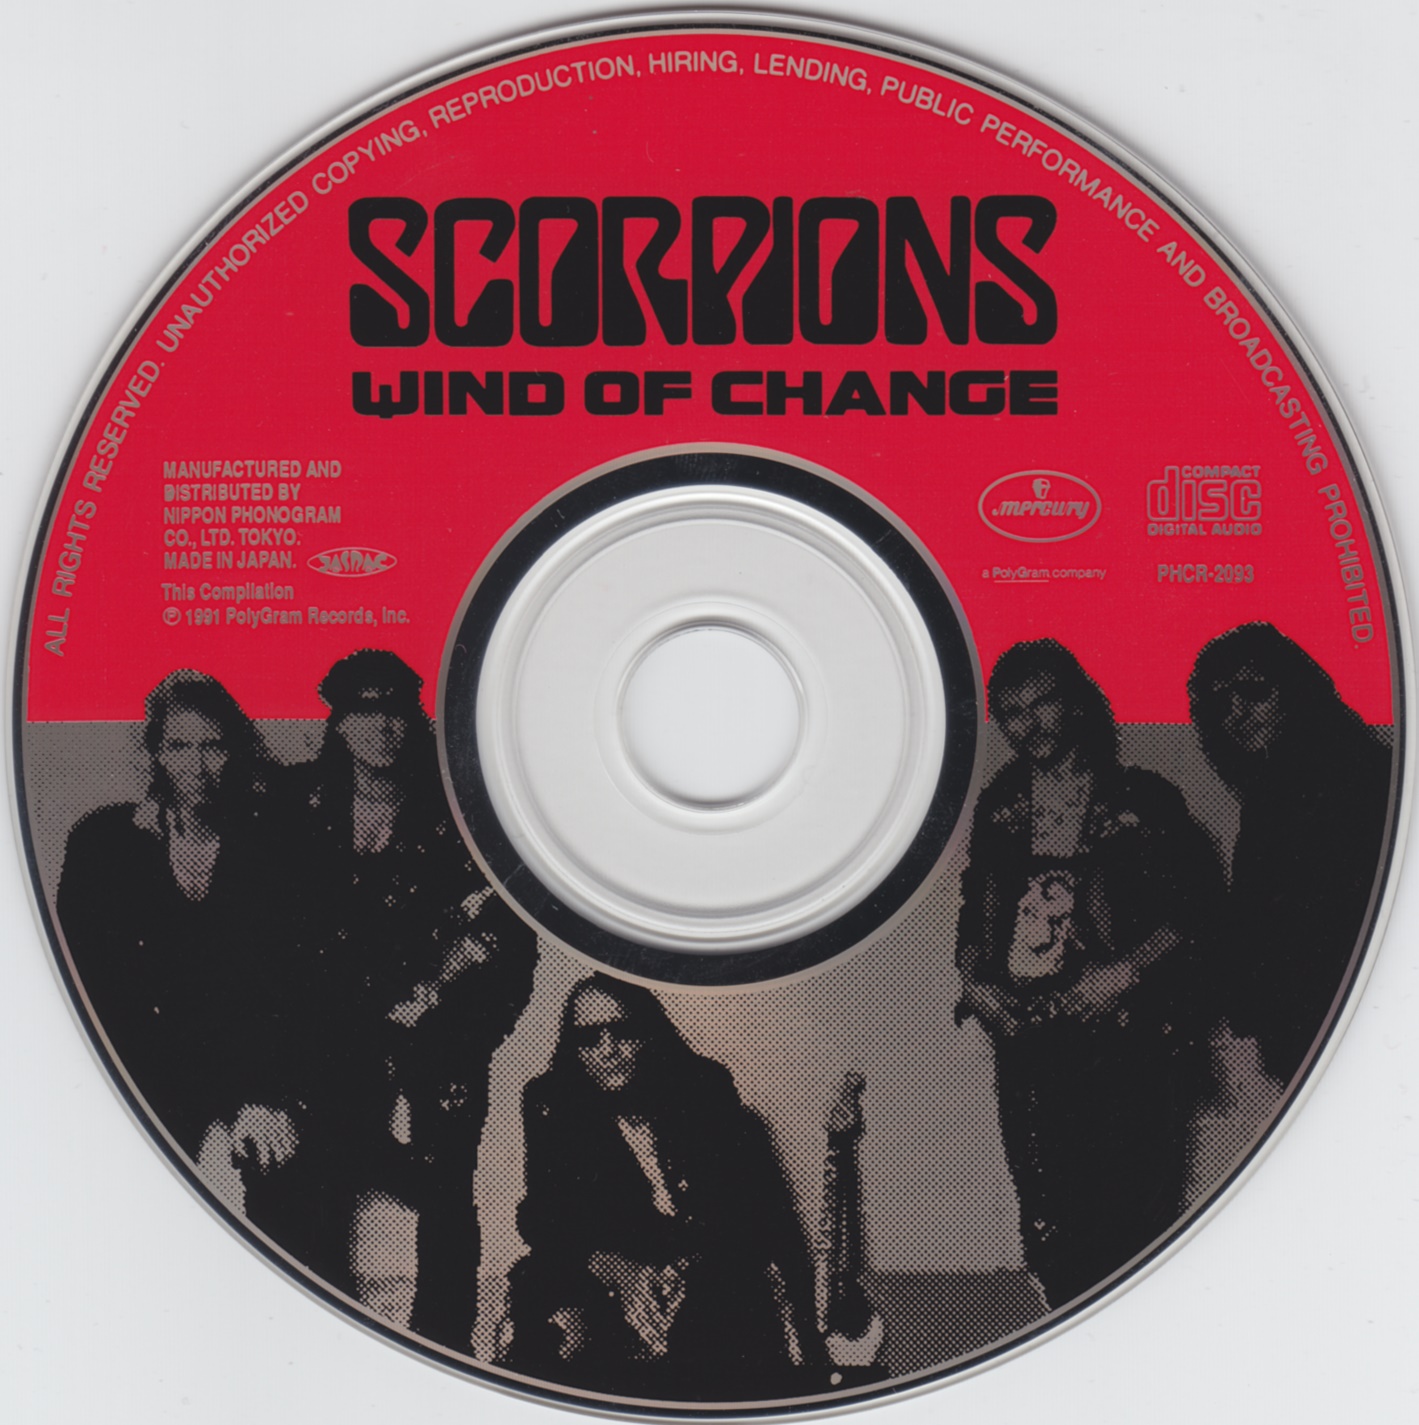 Scorpions. Песни скорпионс ветер перемен